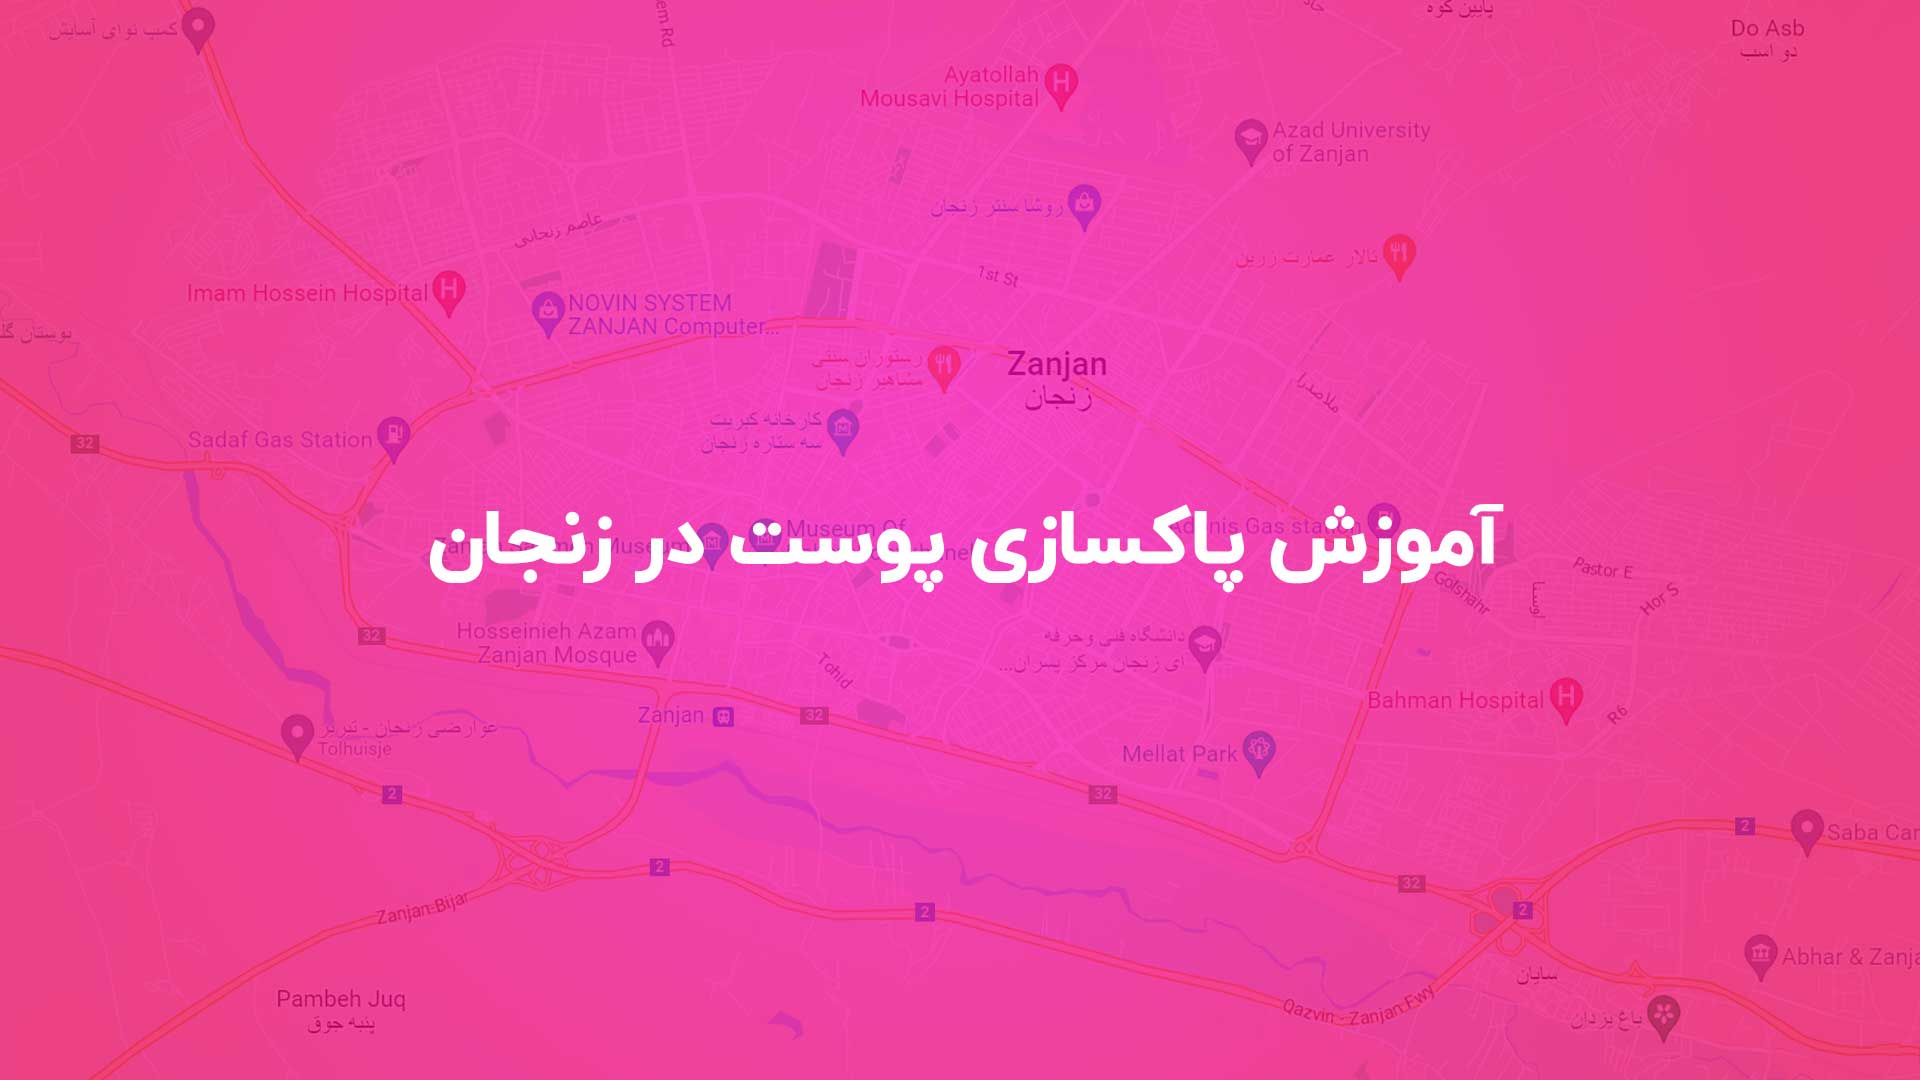 آموزش پاکسازی پوست در زنجان